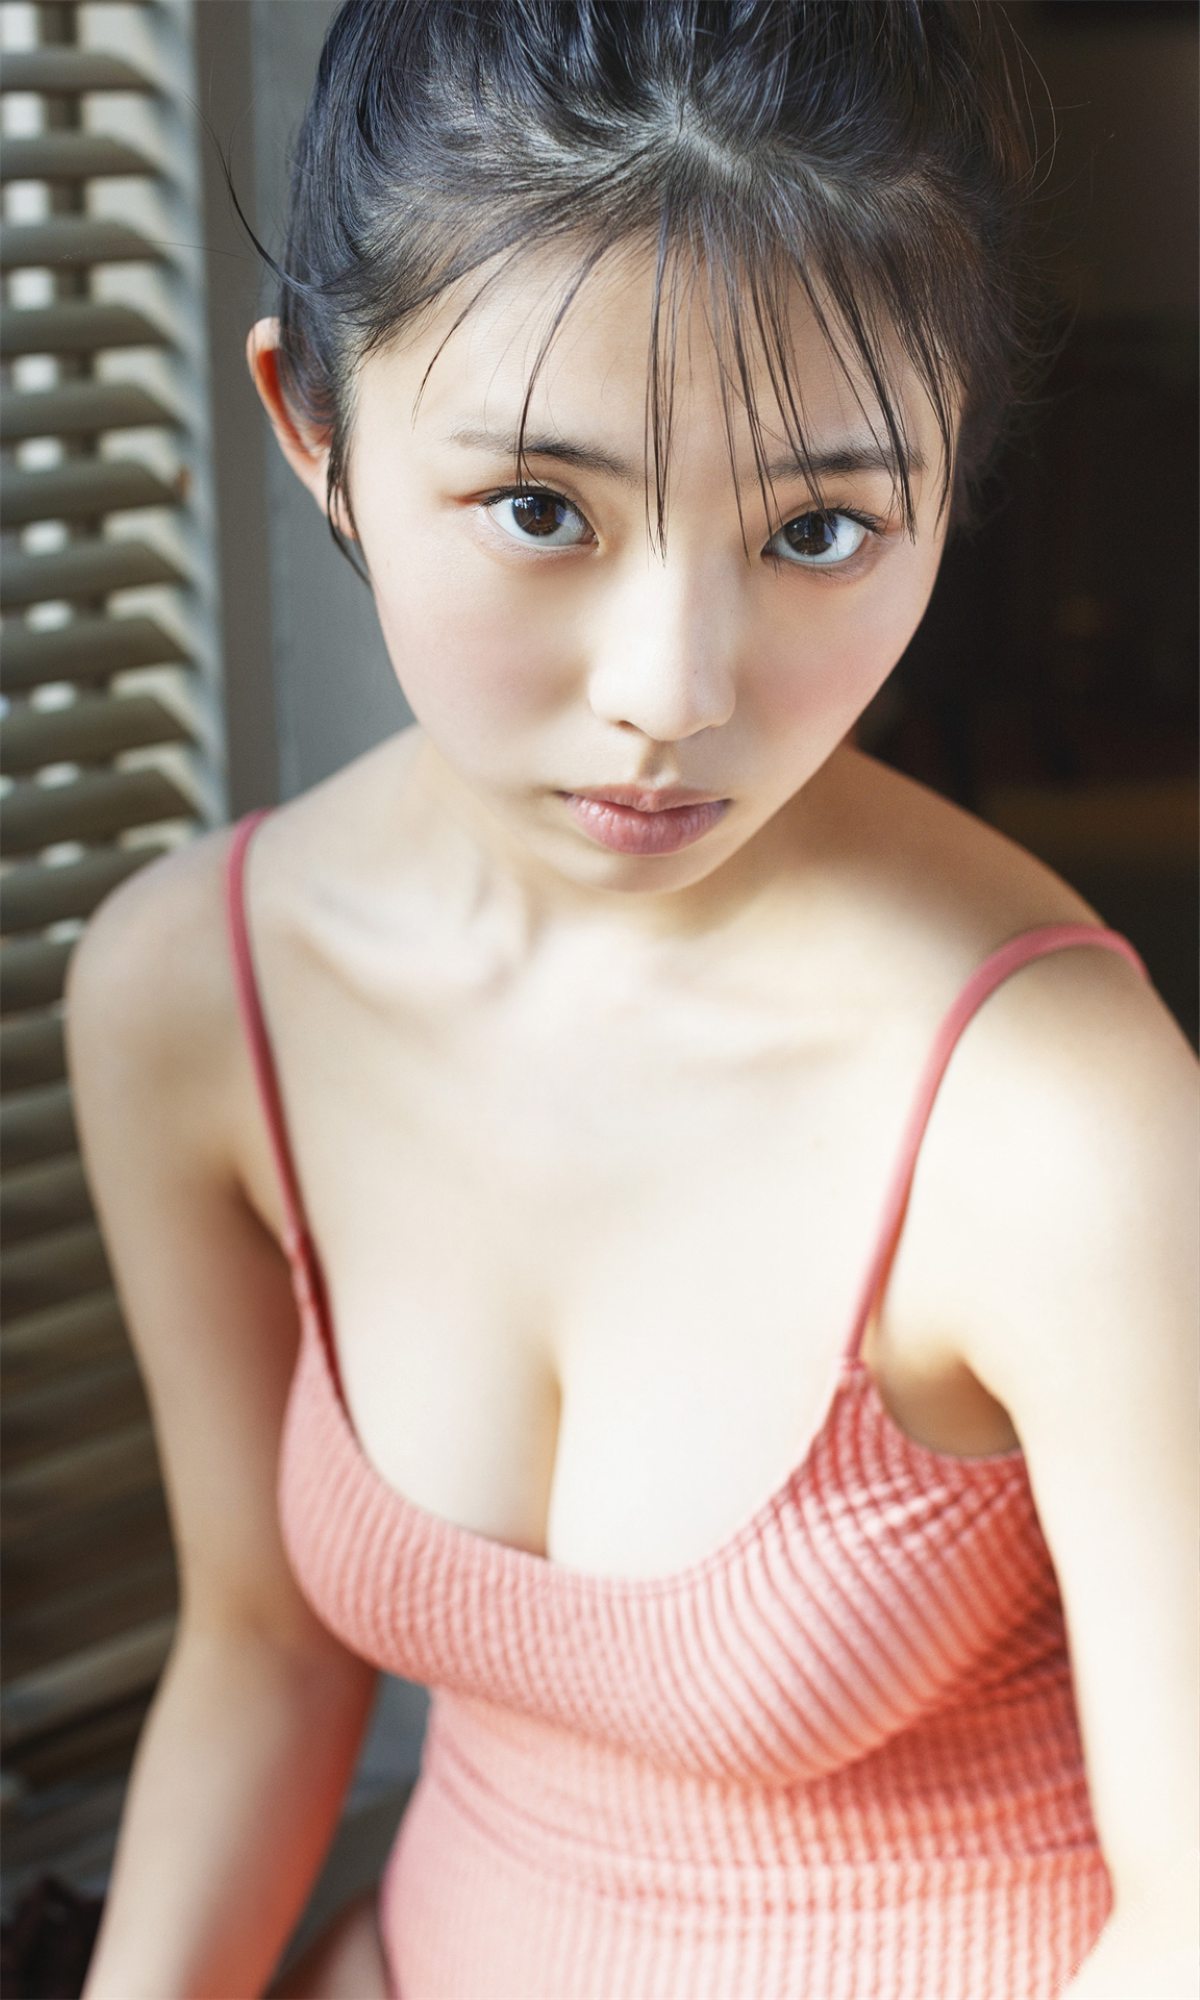 Weekly Photobook 2022 03 14 Hina Kikuchi 菊地姫奈 Harumeku honomeku 春めく、ほのめく 0047 3901020681.jpg